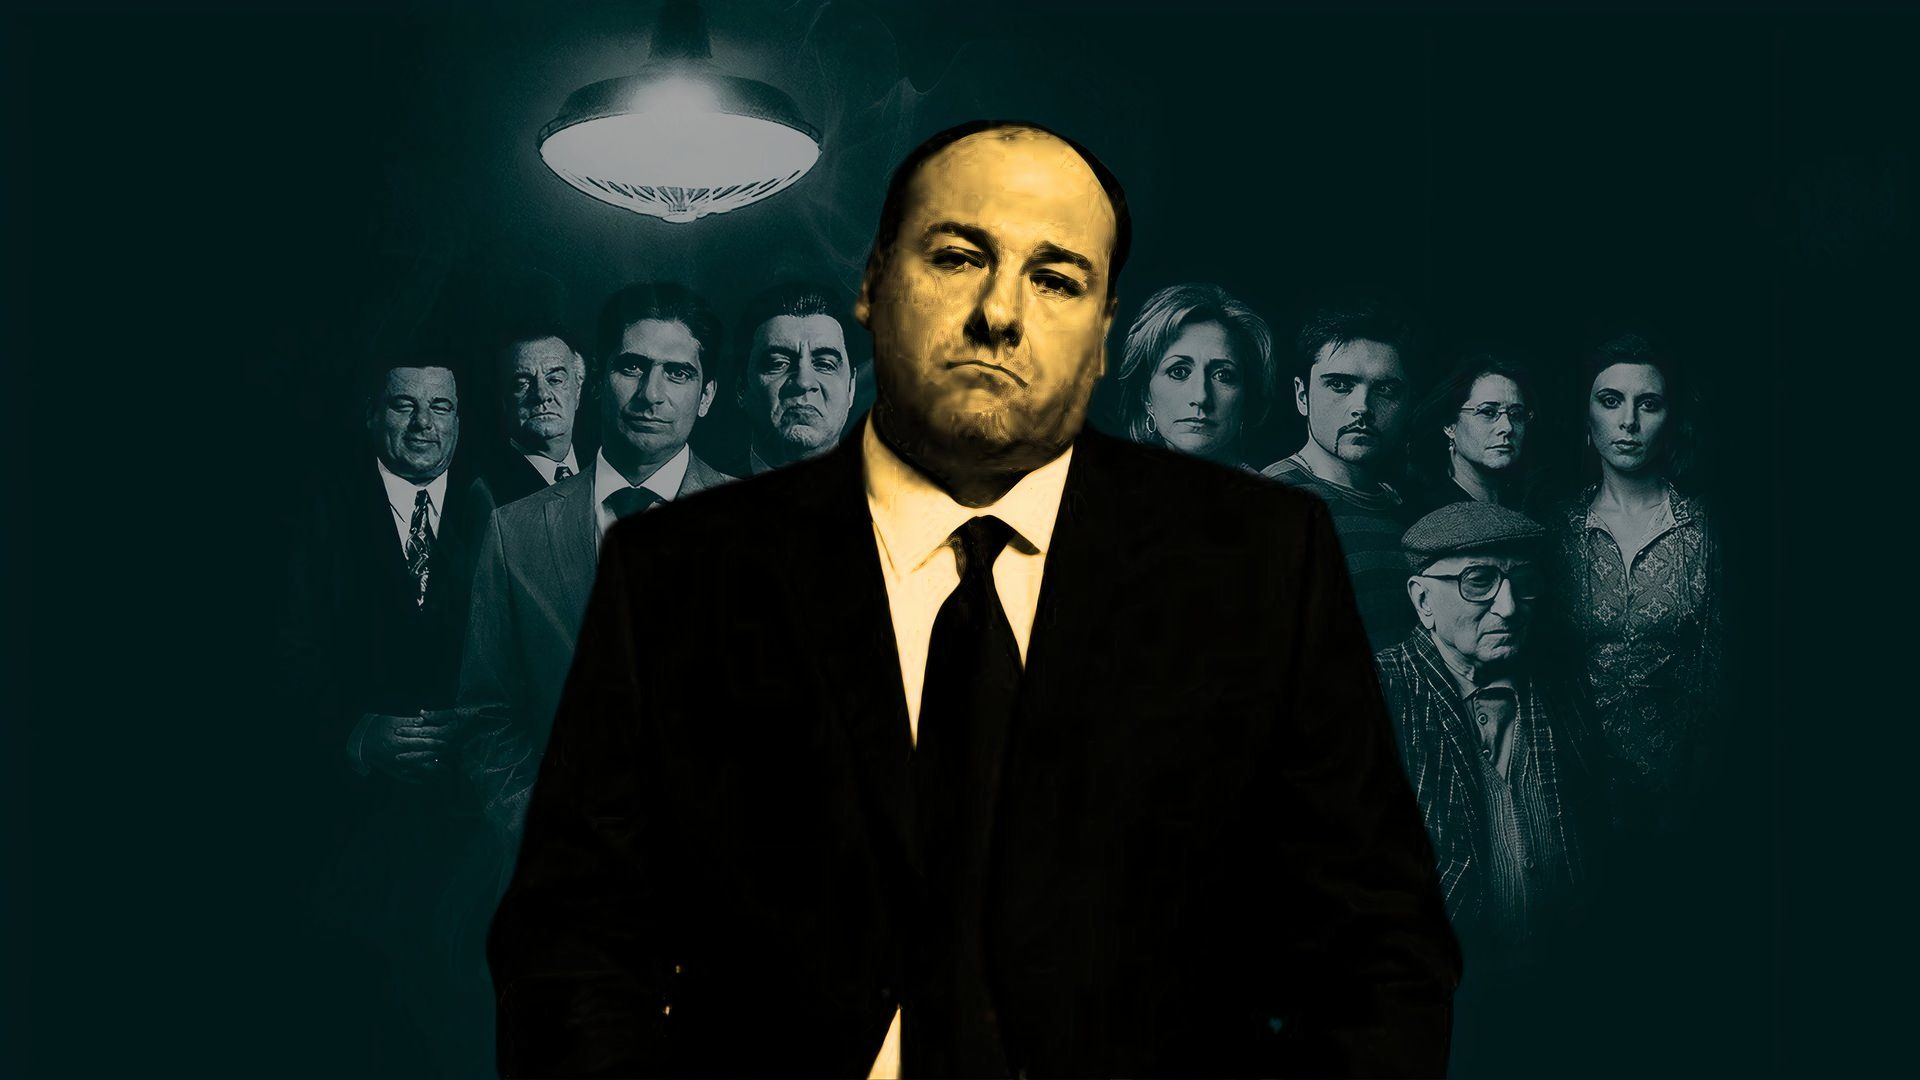 A custom image of James Gandolfini in The Sopranos